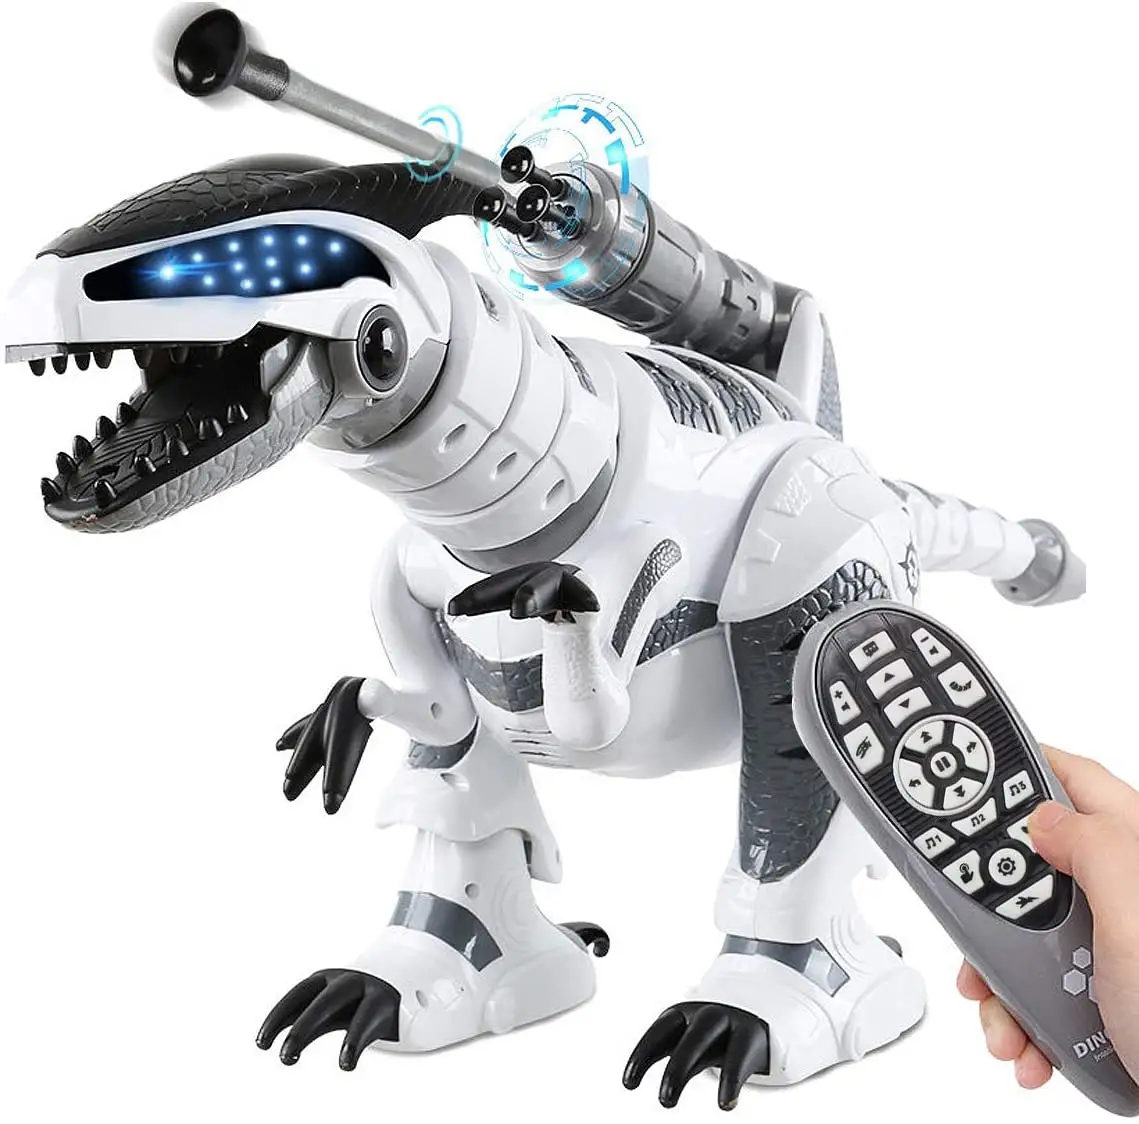 Robot de dinosaurio K9 RC para niños, dinosaurio con Control remoto infrarrojo, juguete inteligente programable con música y baile